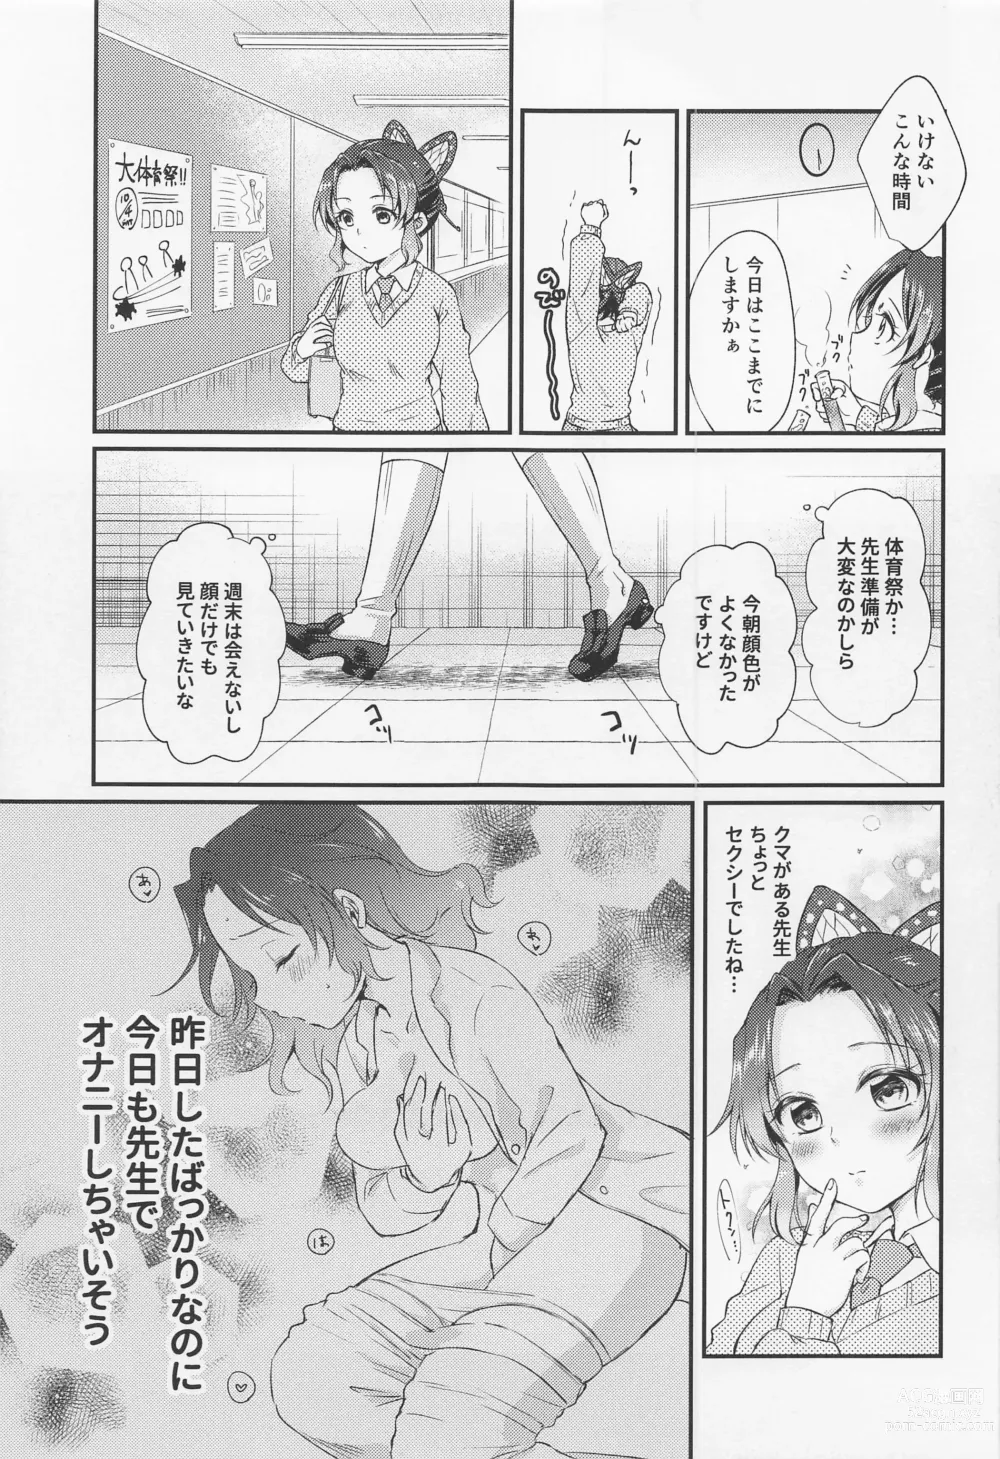 Page 8 of doujinshi Amakara Oxymoron